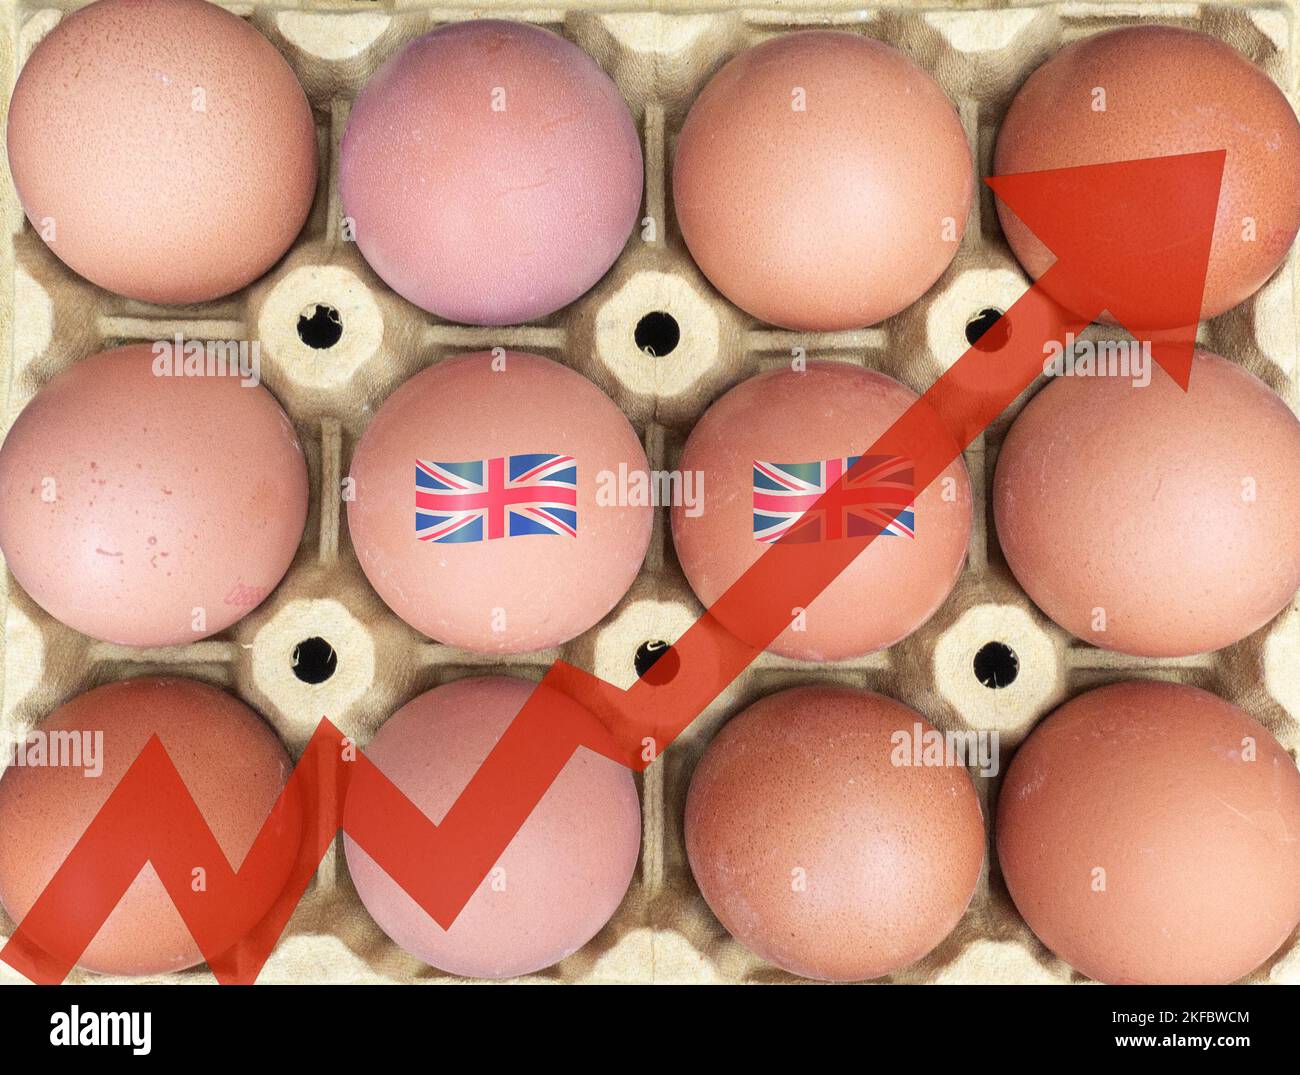 Eiermangel, steigende Eierpreise, Inflation, Lebenshaltungskosten, Vogelgrippe, Vogelgrippe... Konzept Stockfoto